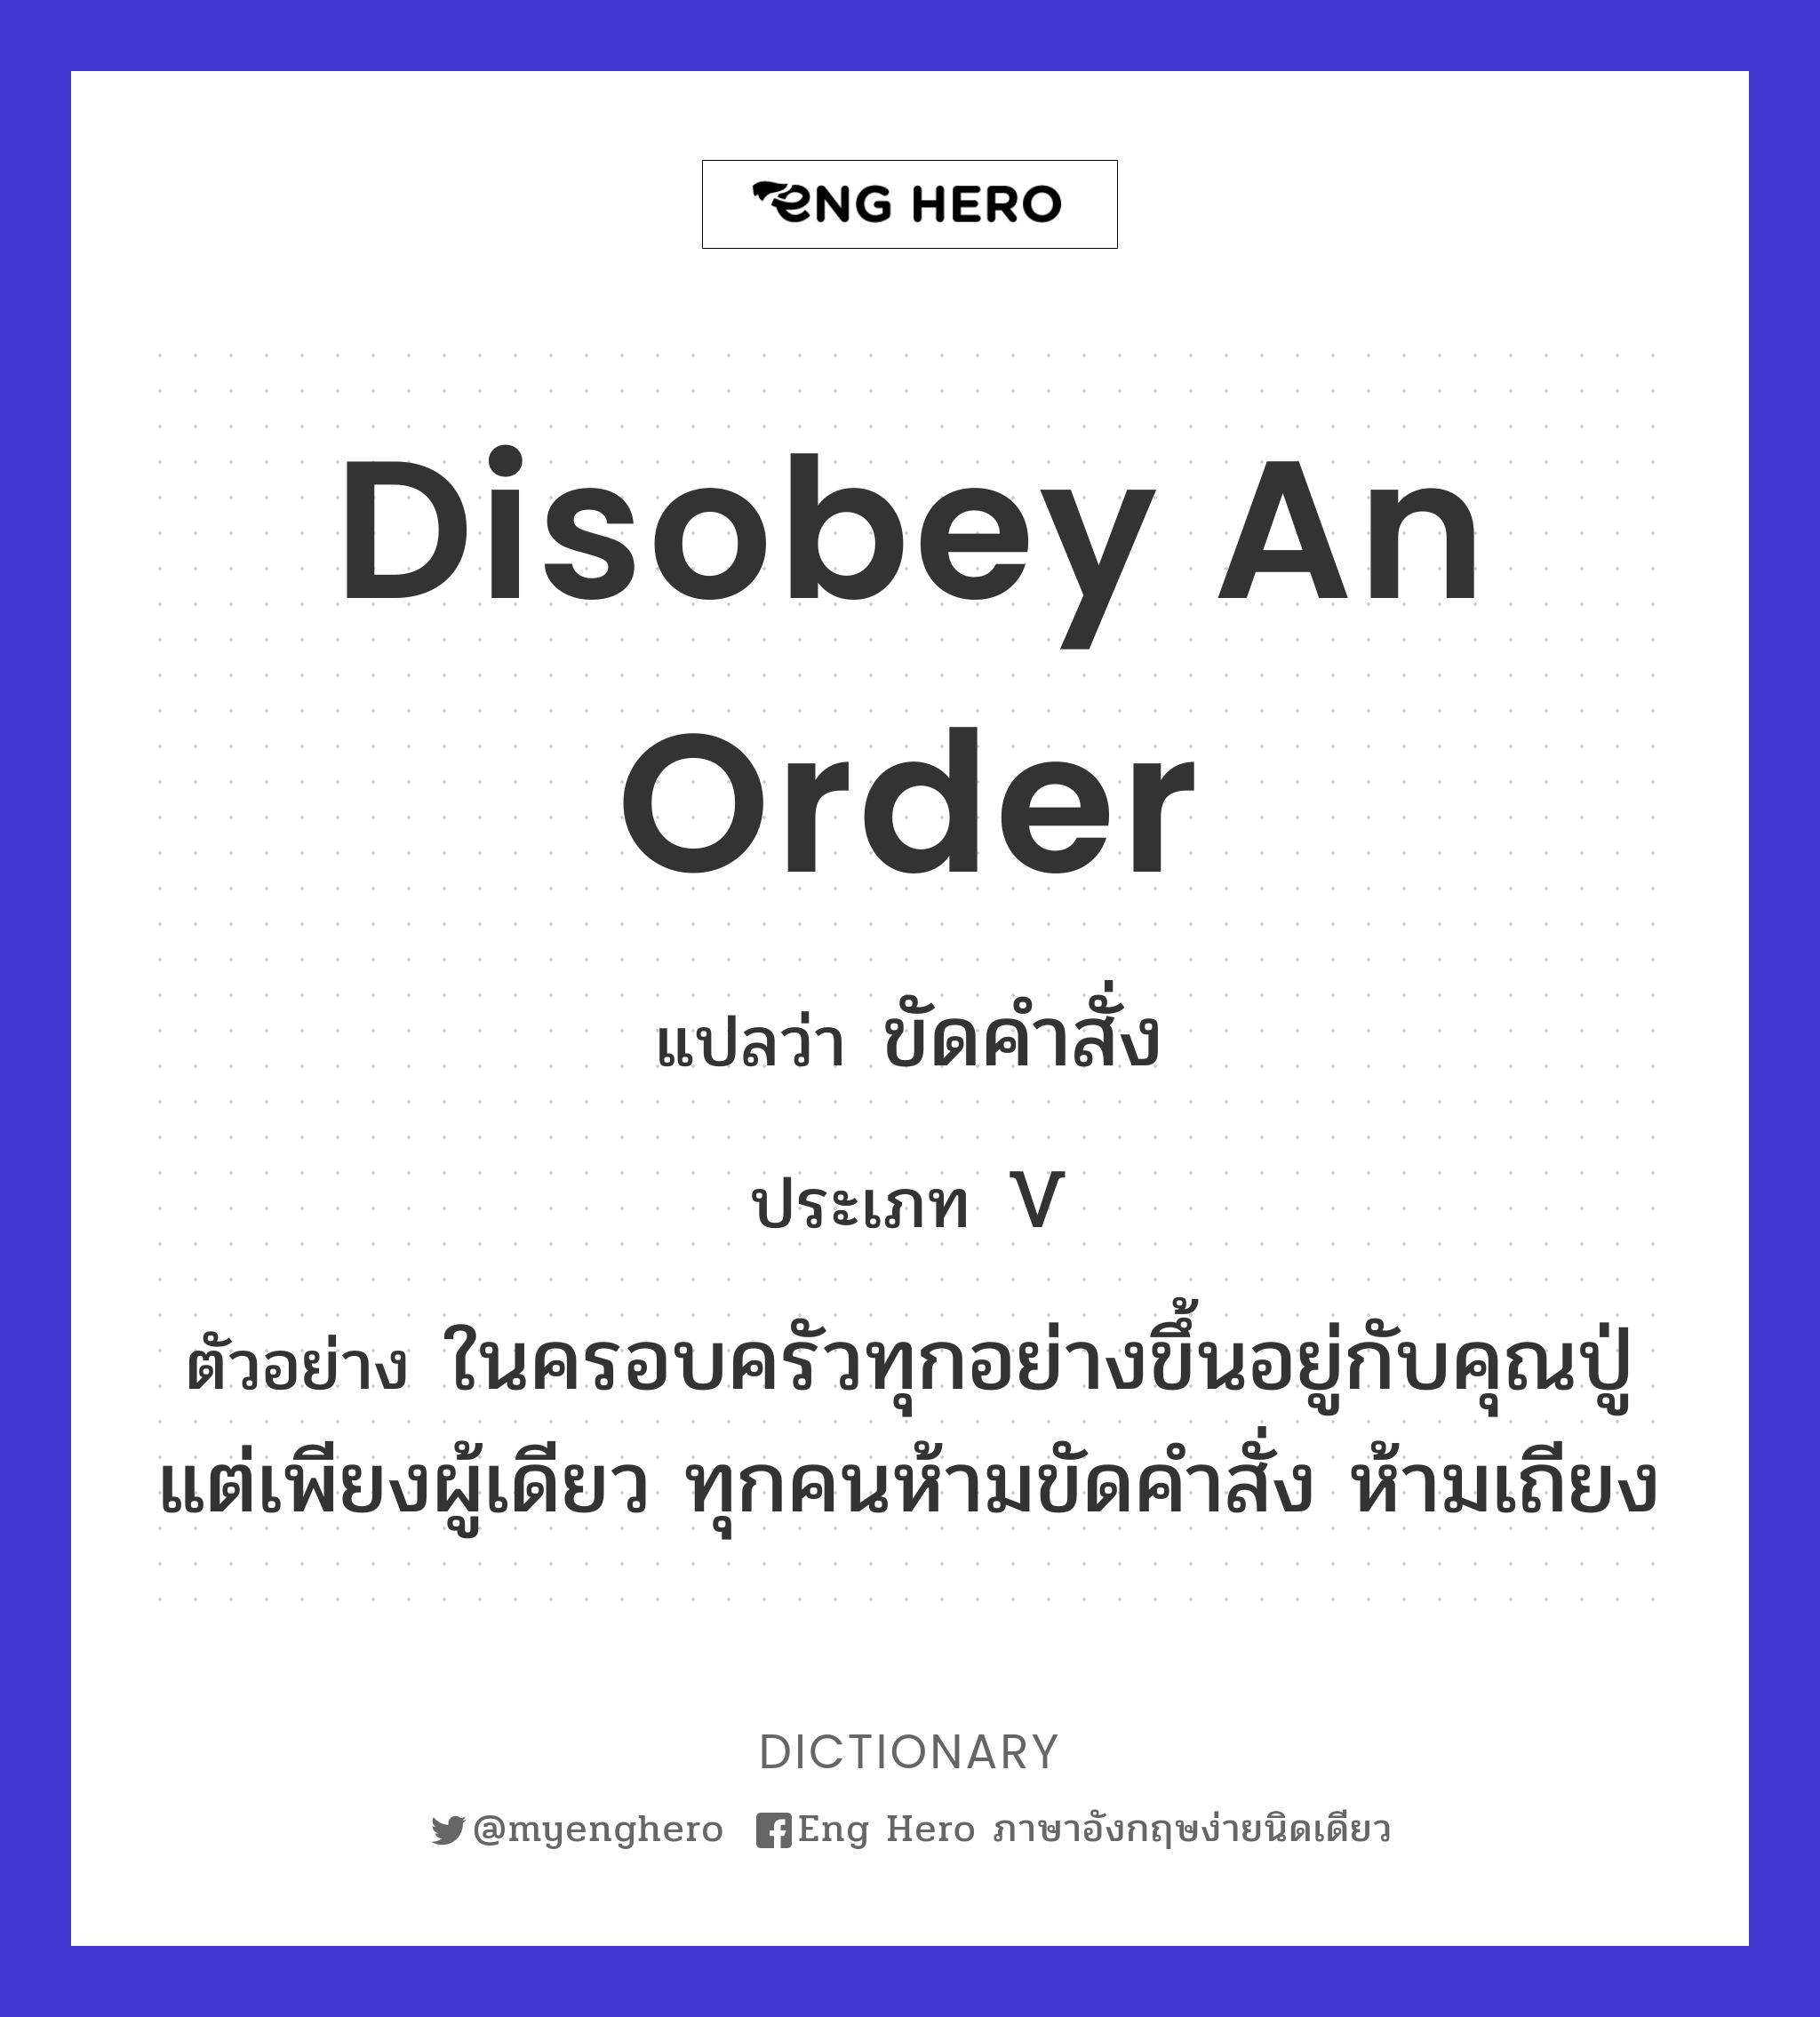 Disobey An Order แปลว่า ขัดคำสั่ง | Eng Hero เรียนภาษาอังกฤษ ออนไลน์ ฟรี